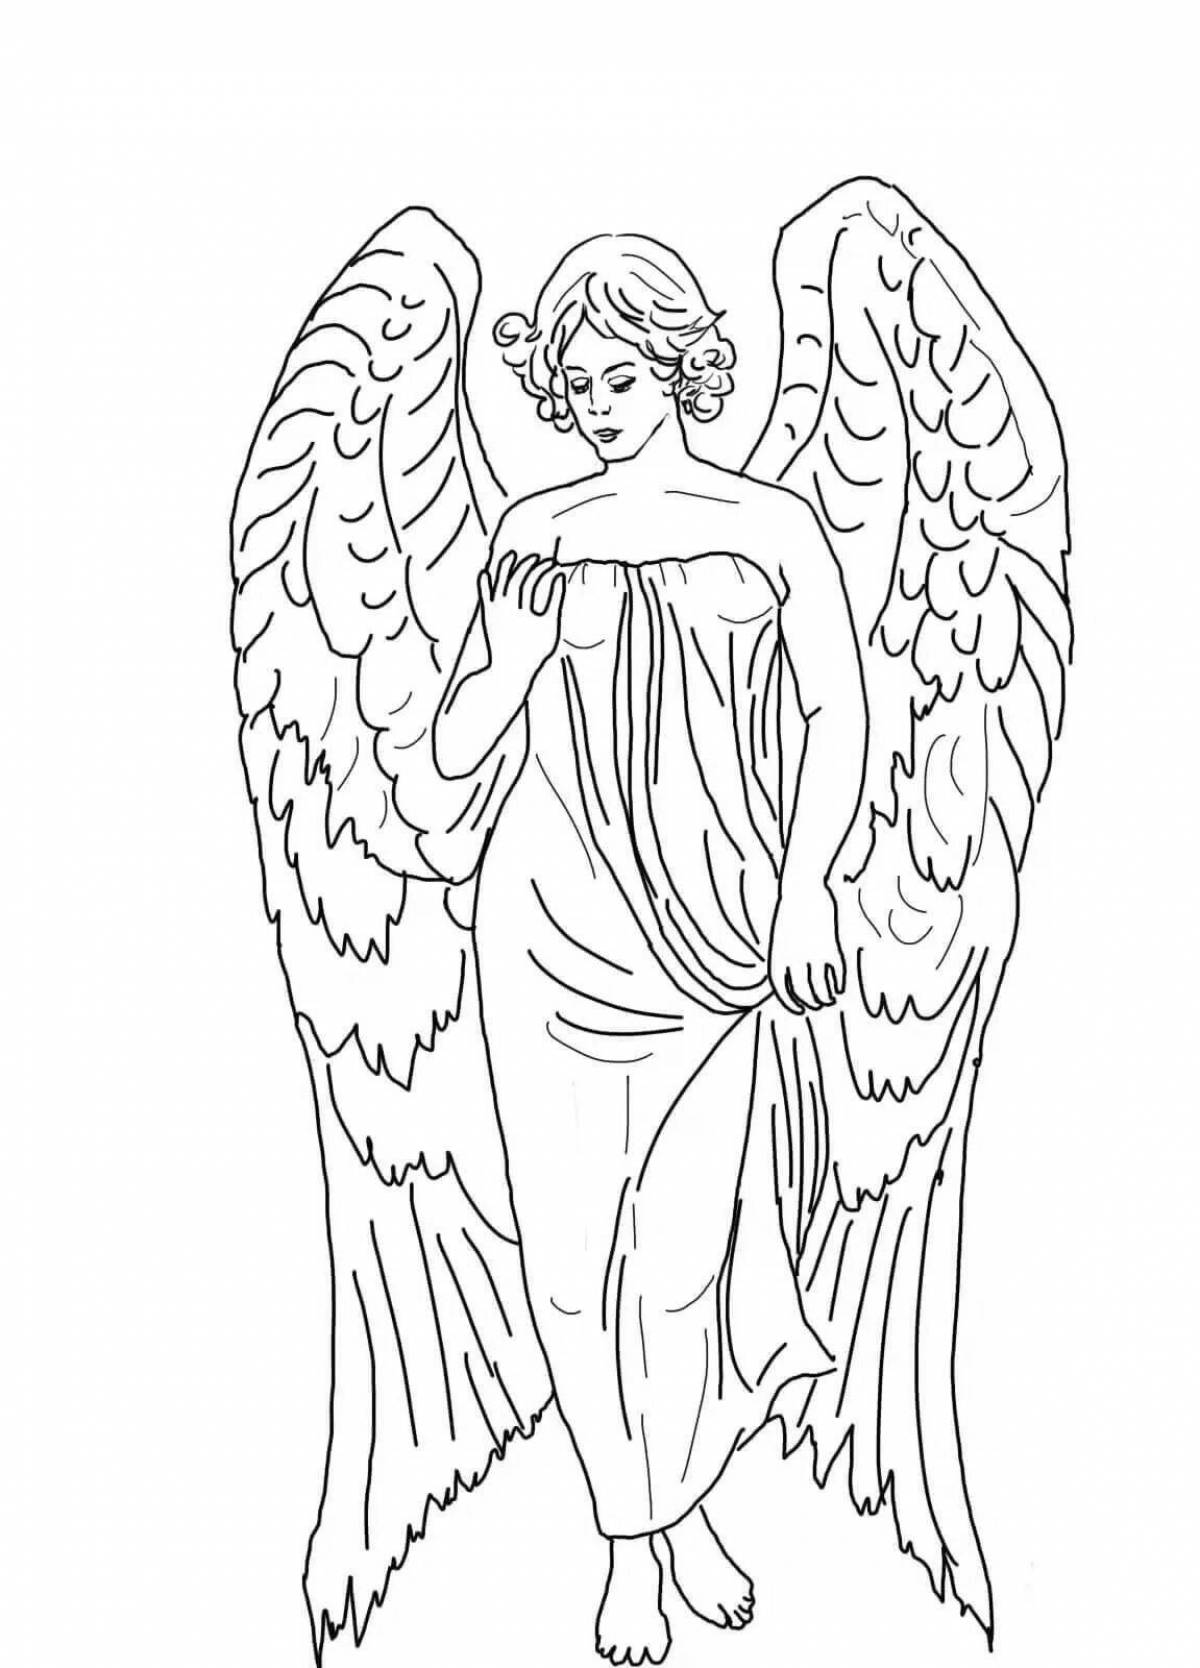 Величественные ангелы-раскраски с красивыми крыльями